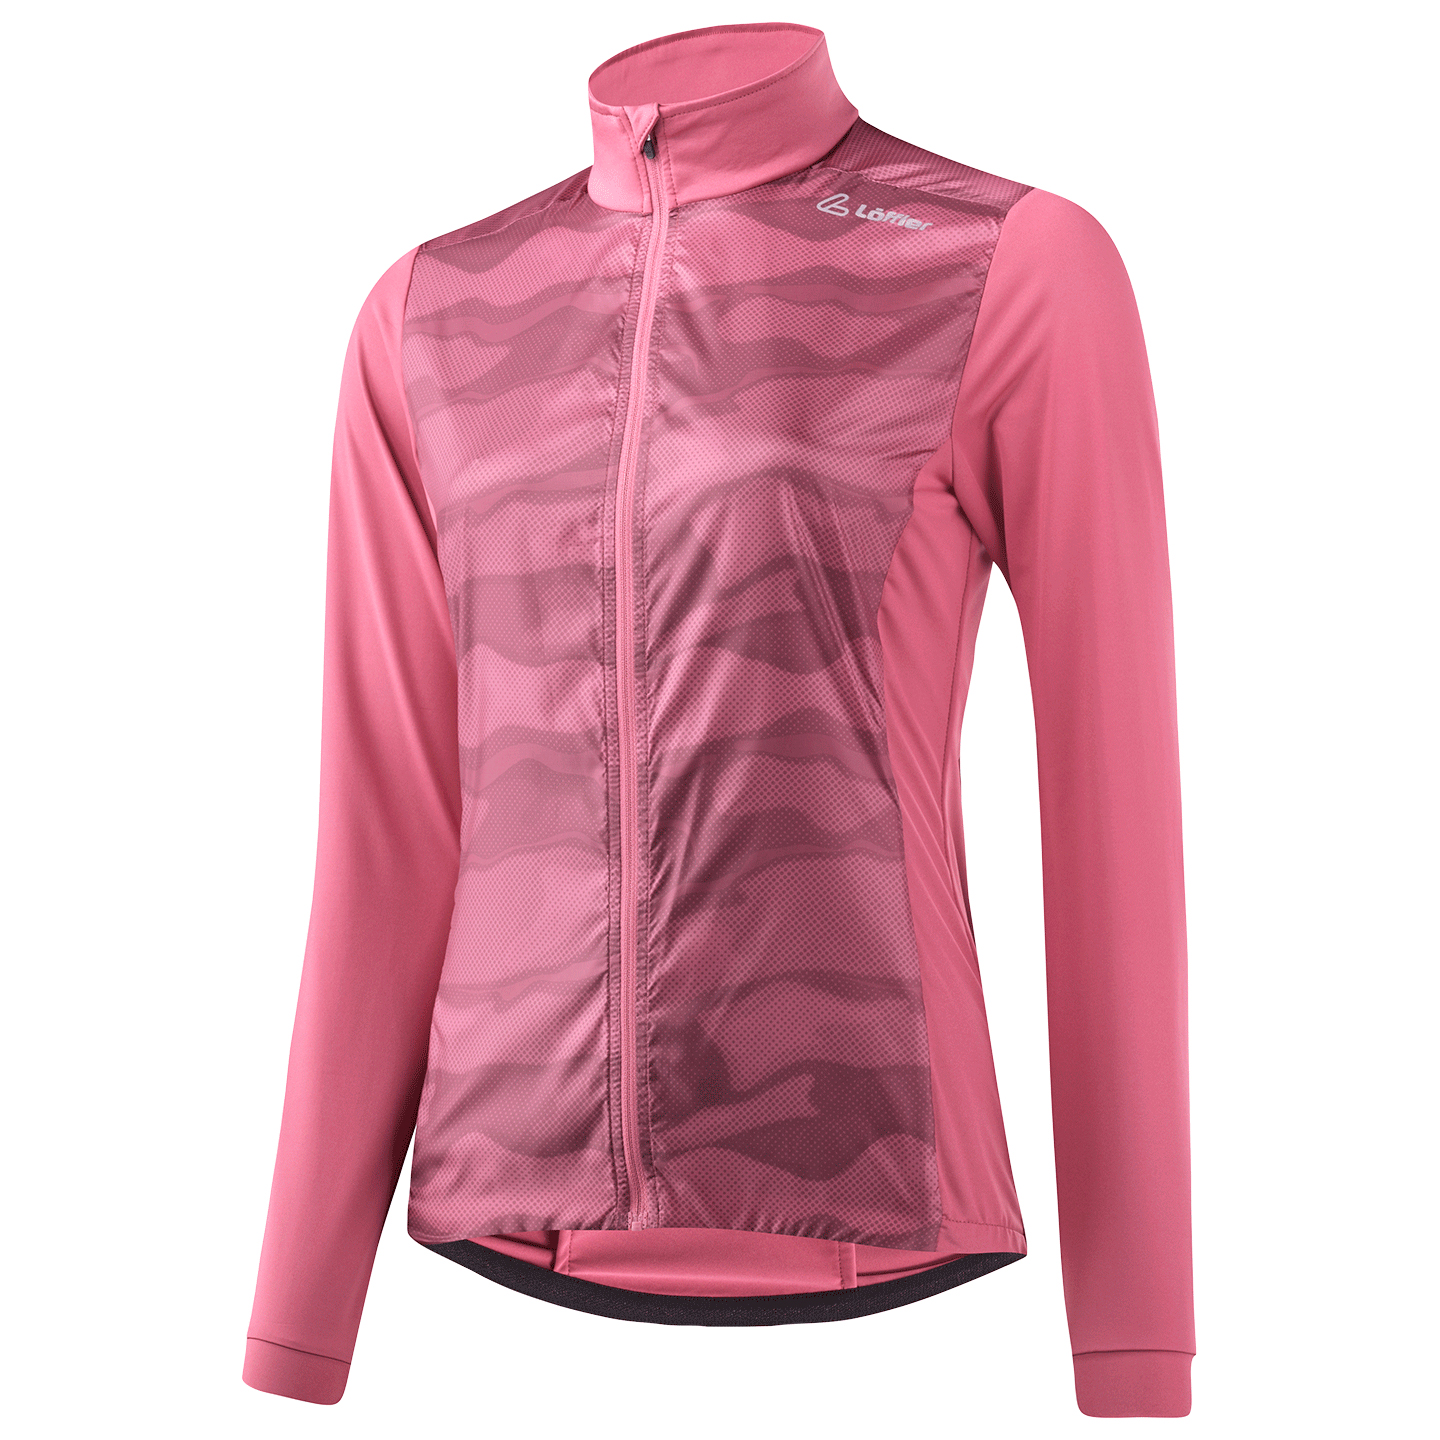 Велосипедная куртка Löffler Women's Bike Light Hybridjacket, цвет Malaga vis180 микро стойка light